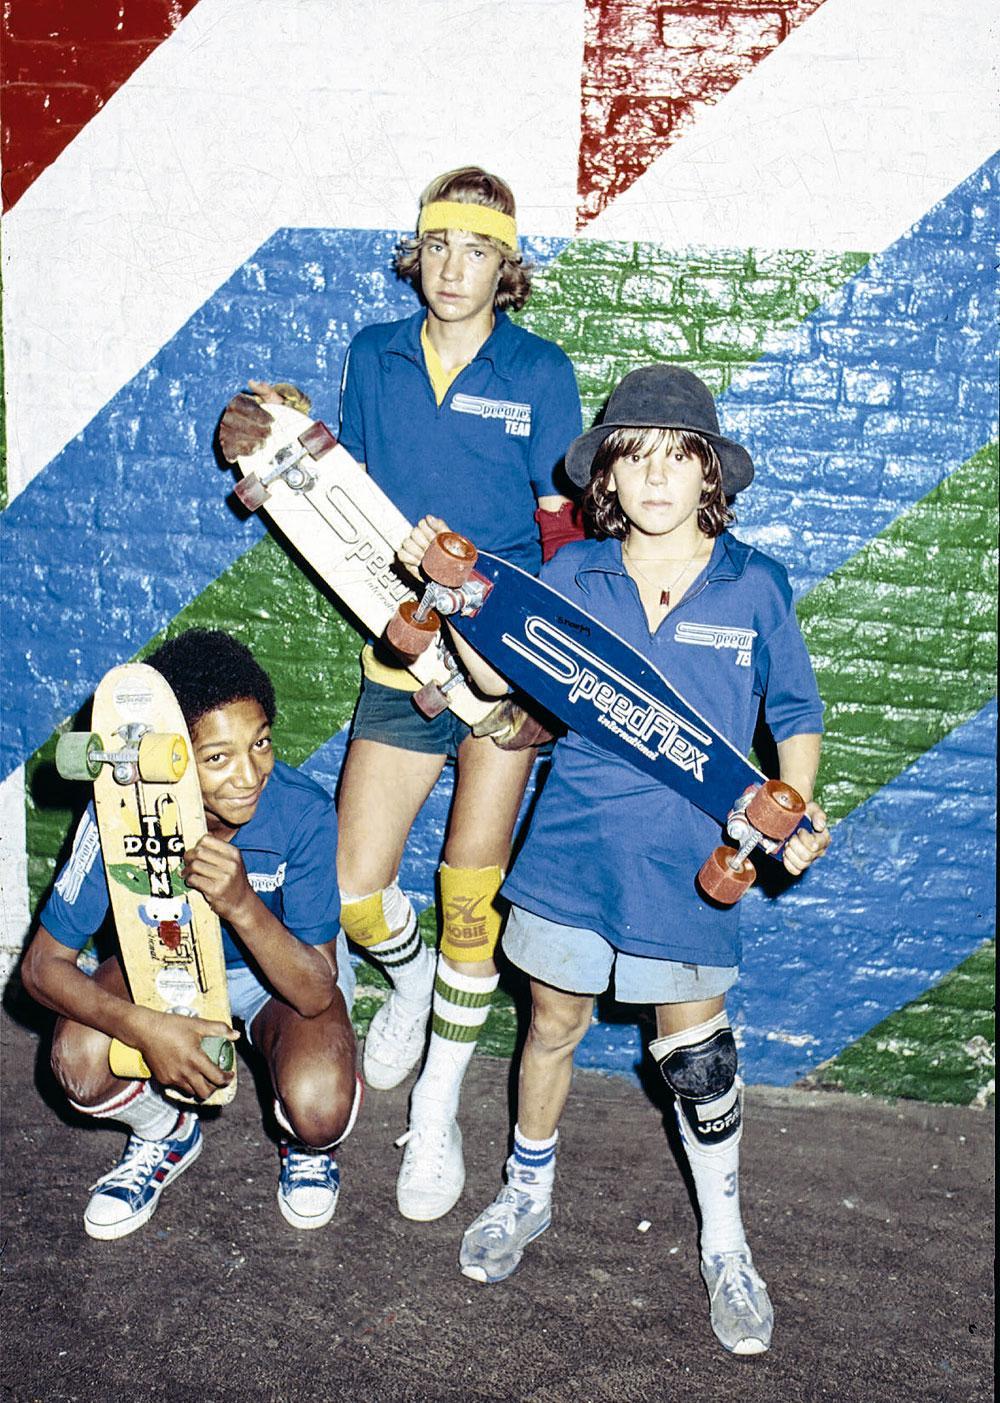 Fin des années 70, des gamins acrobates défient la pesanteur sur leurs skates aux quatre coins du pays.